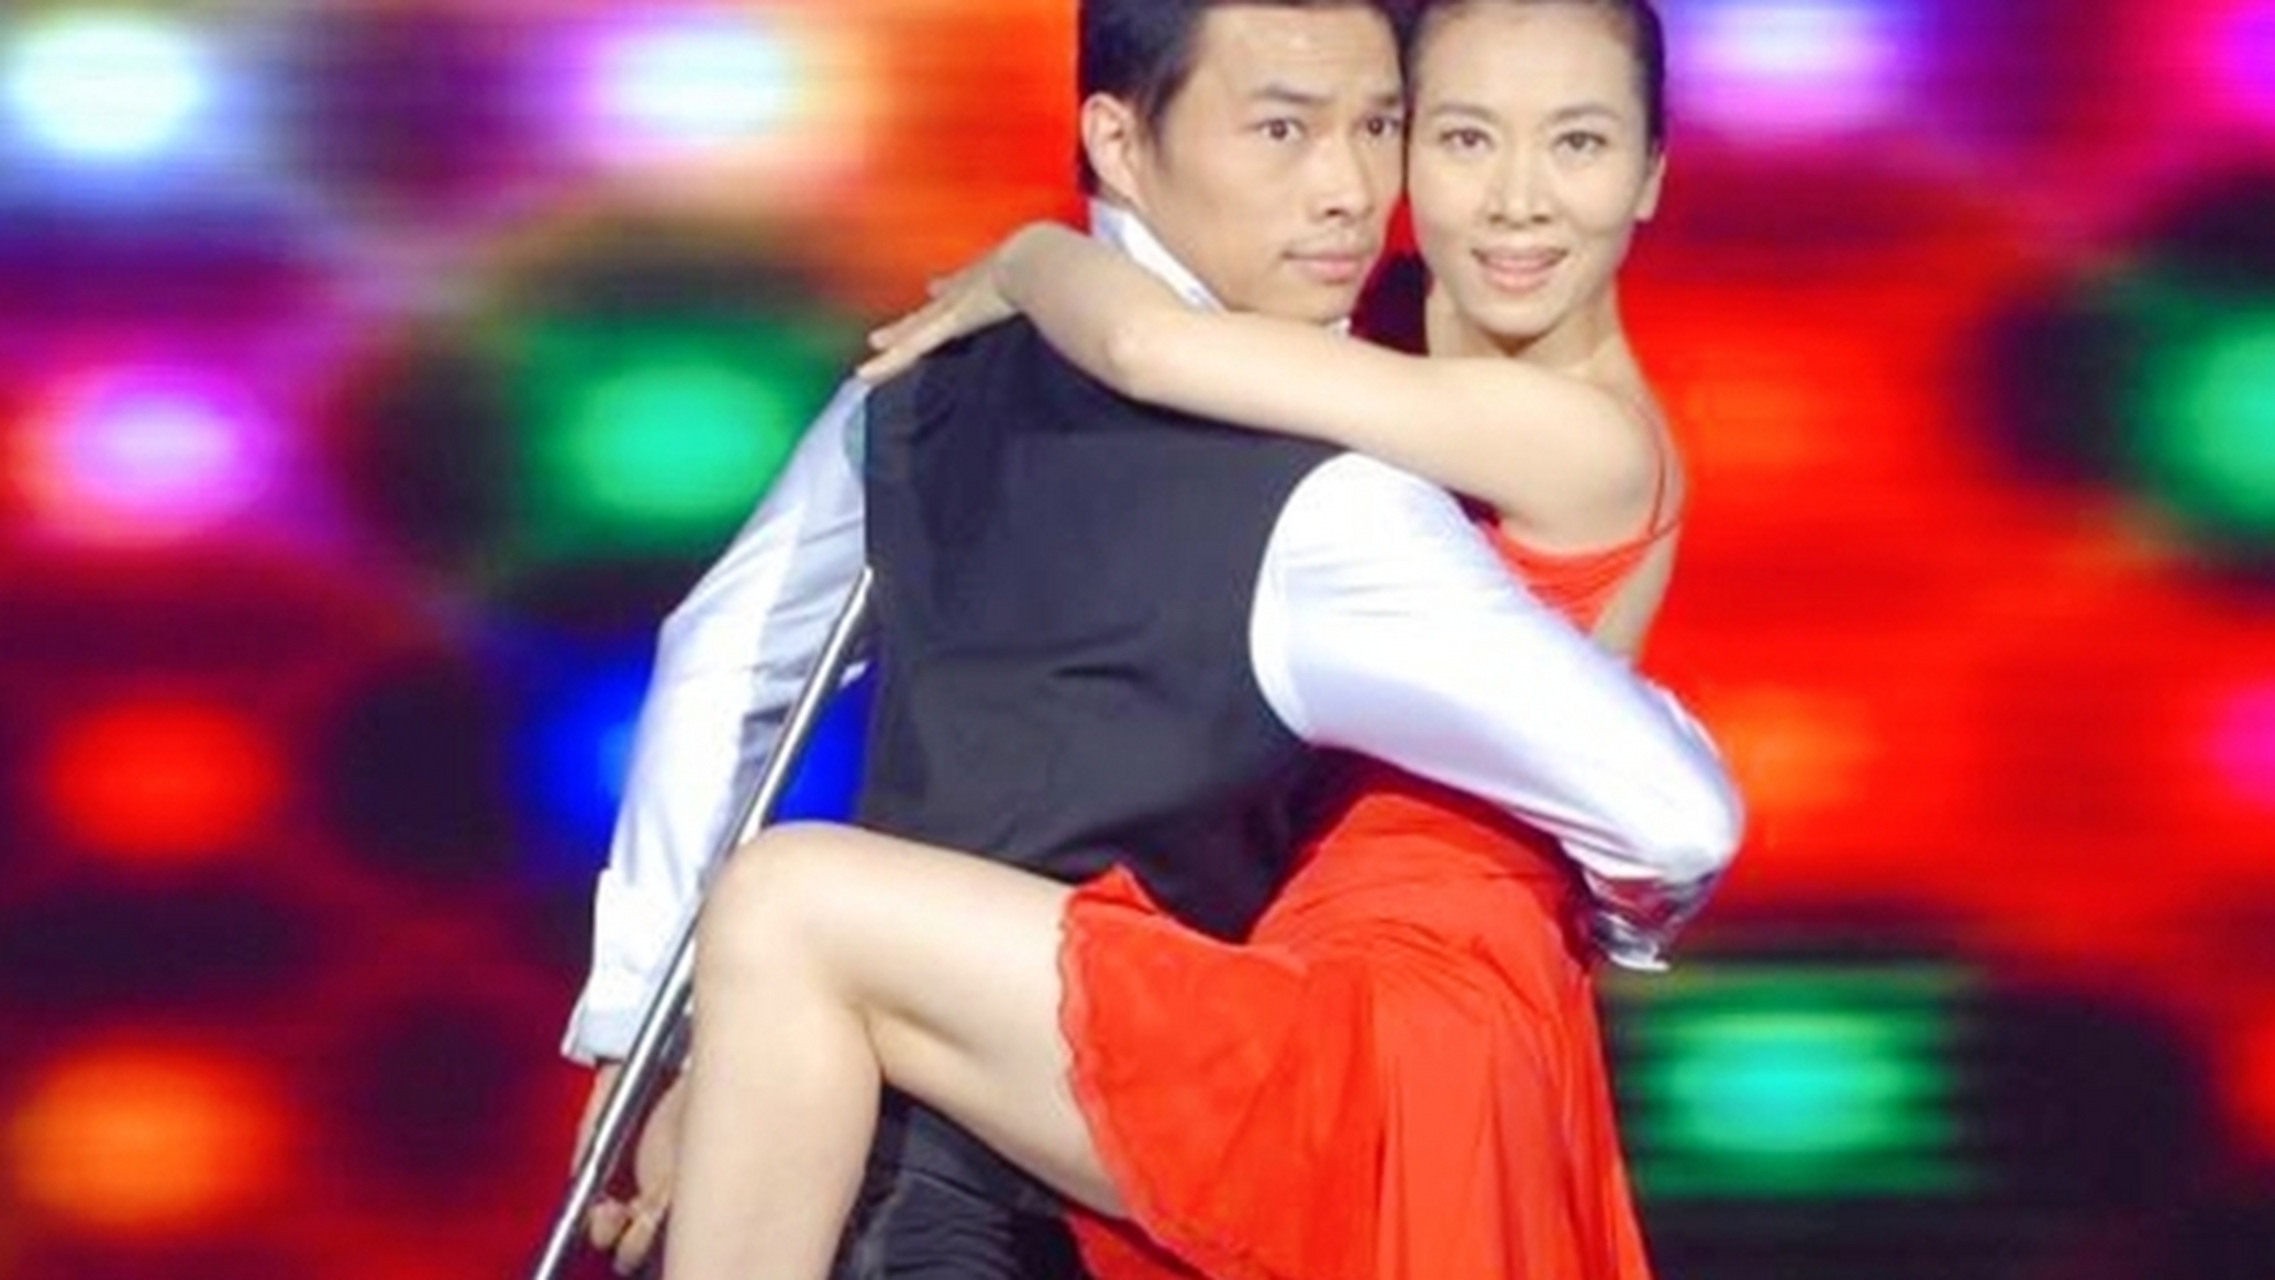 翟孝伟,河南濮阳人,38岁,著名青年舞蹈家,被誉为单腿舞王